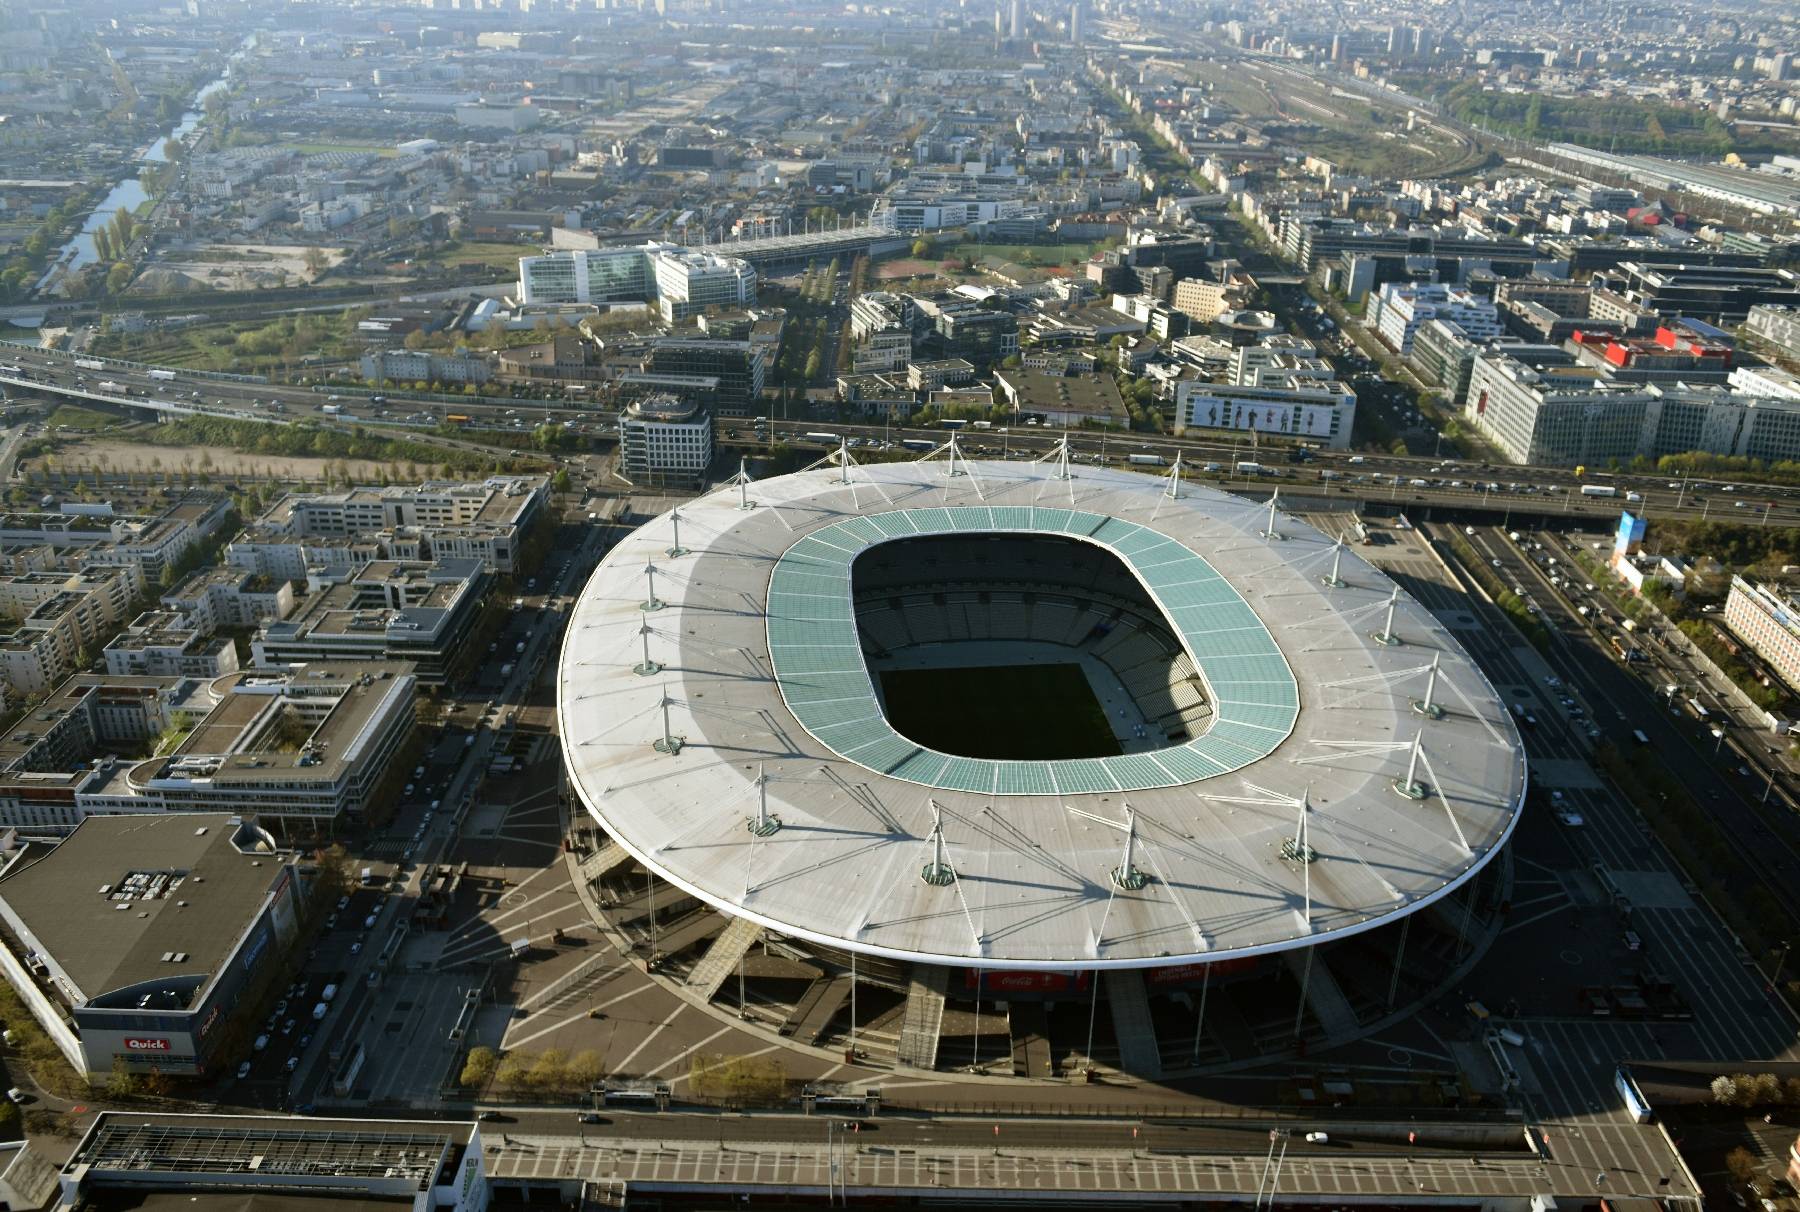 Réforme des retraites : la CGT annonce avoir coupé le courant au stade de France et au chantier du village olympique